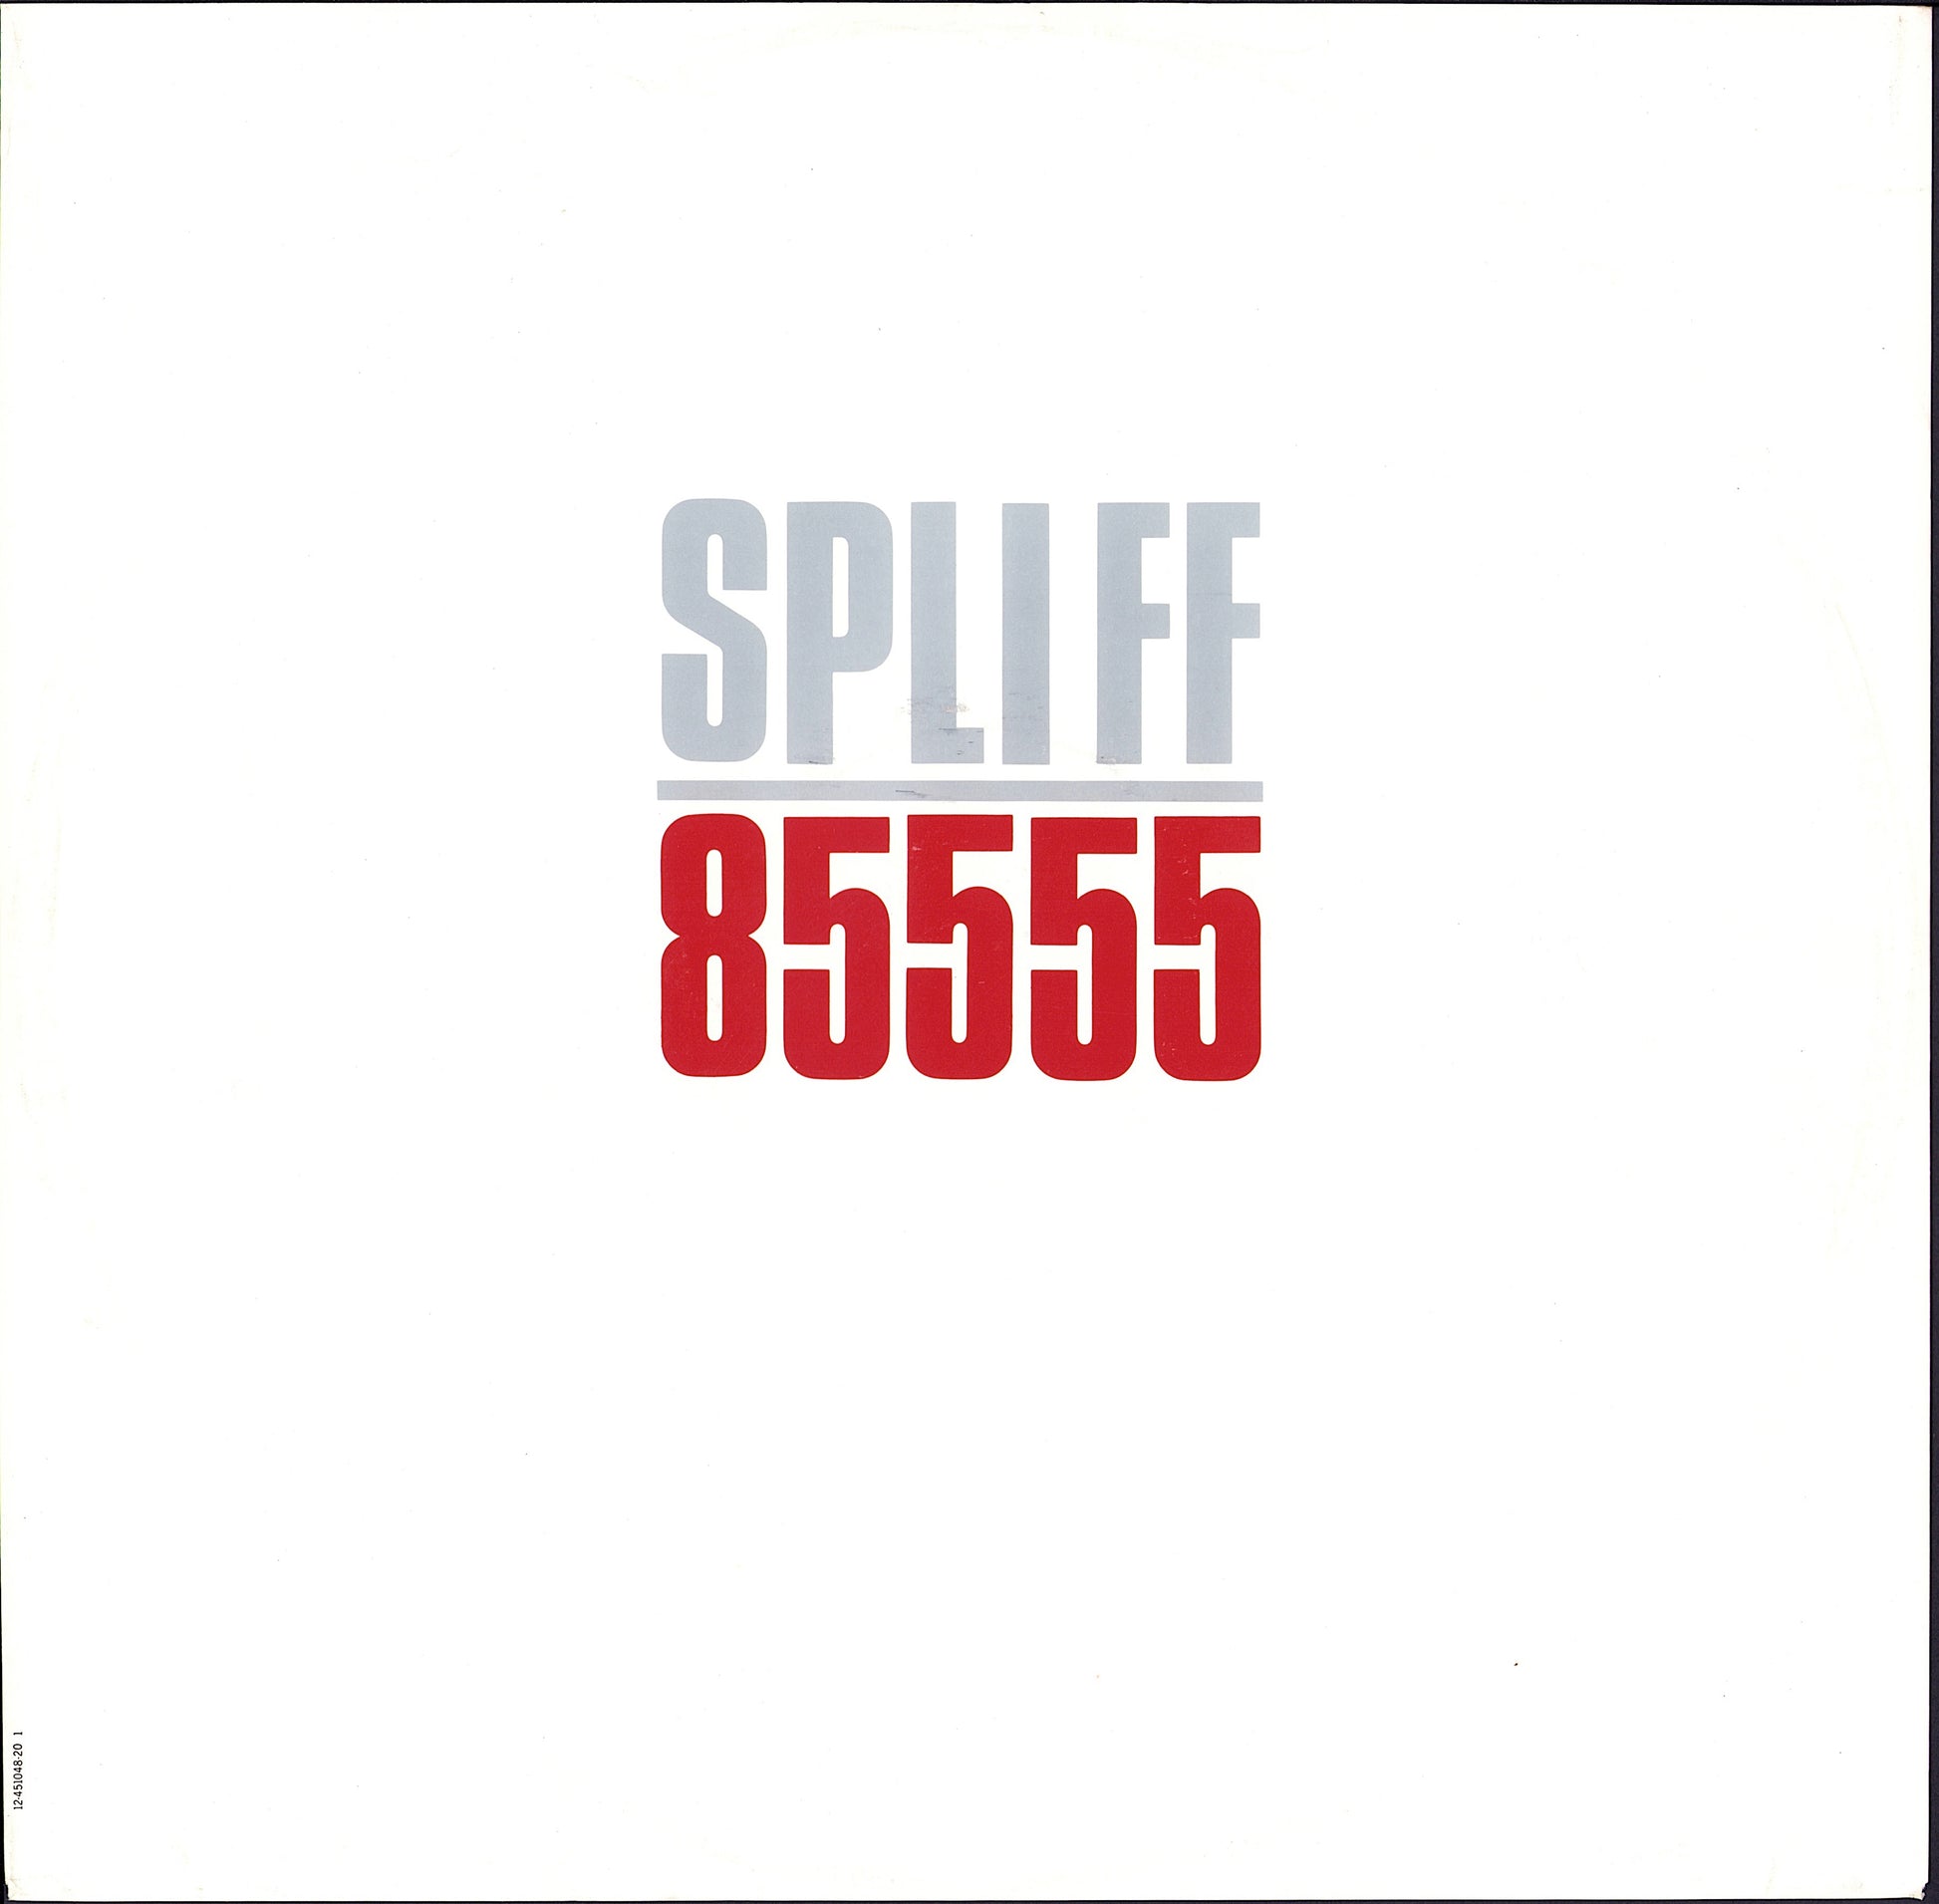 Spliff ‎- 85555 / Herzlichen Glückwunsch Vinyl 2LP